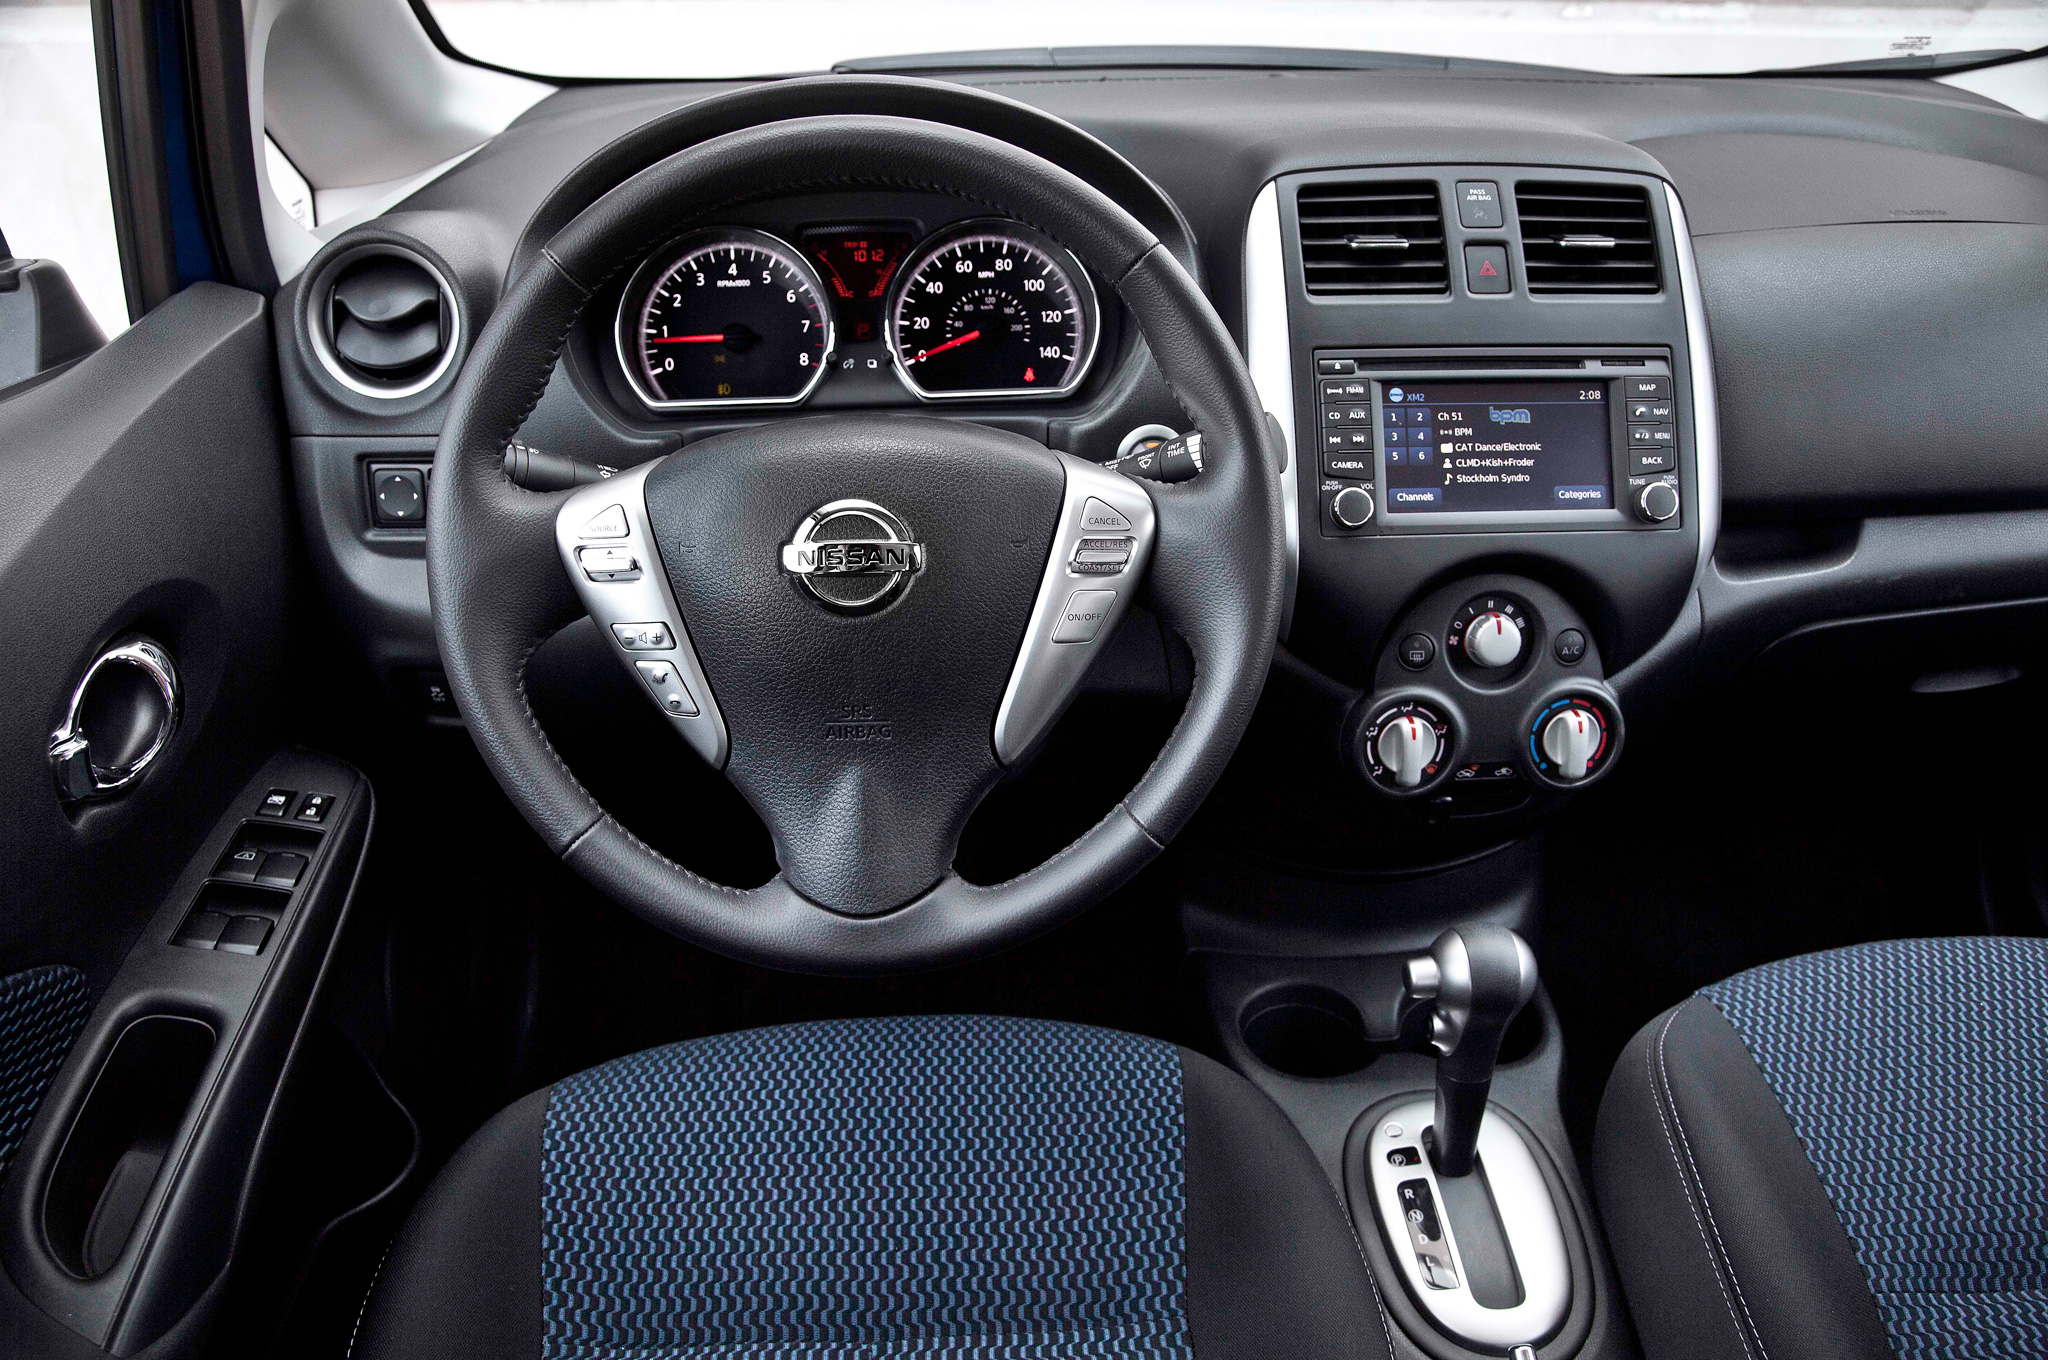 2014 Nissan Note Interior Dashboard